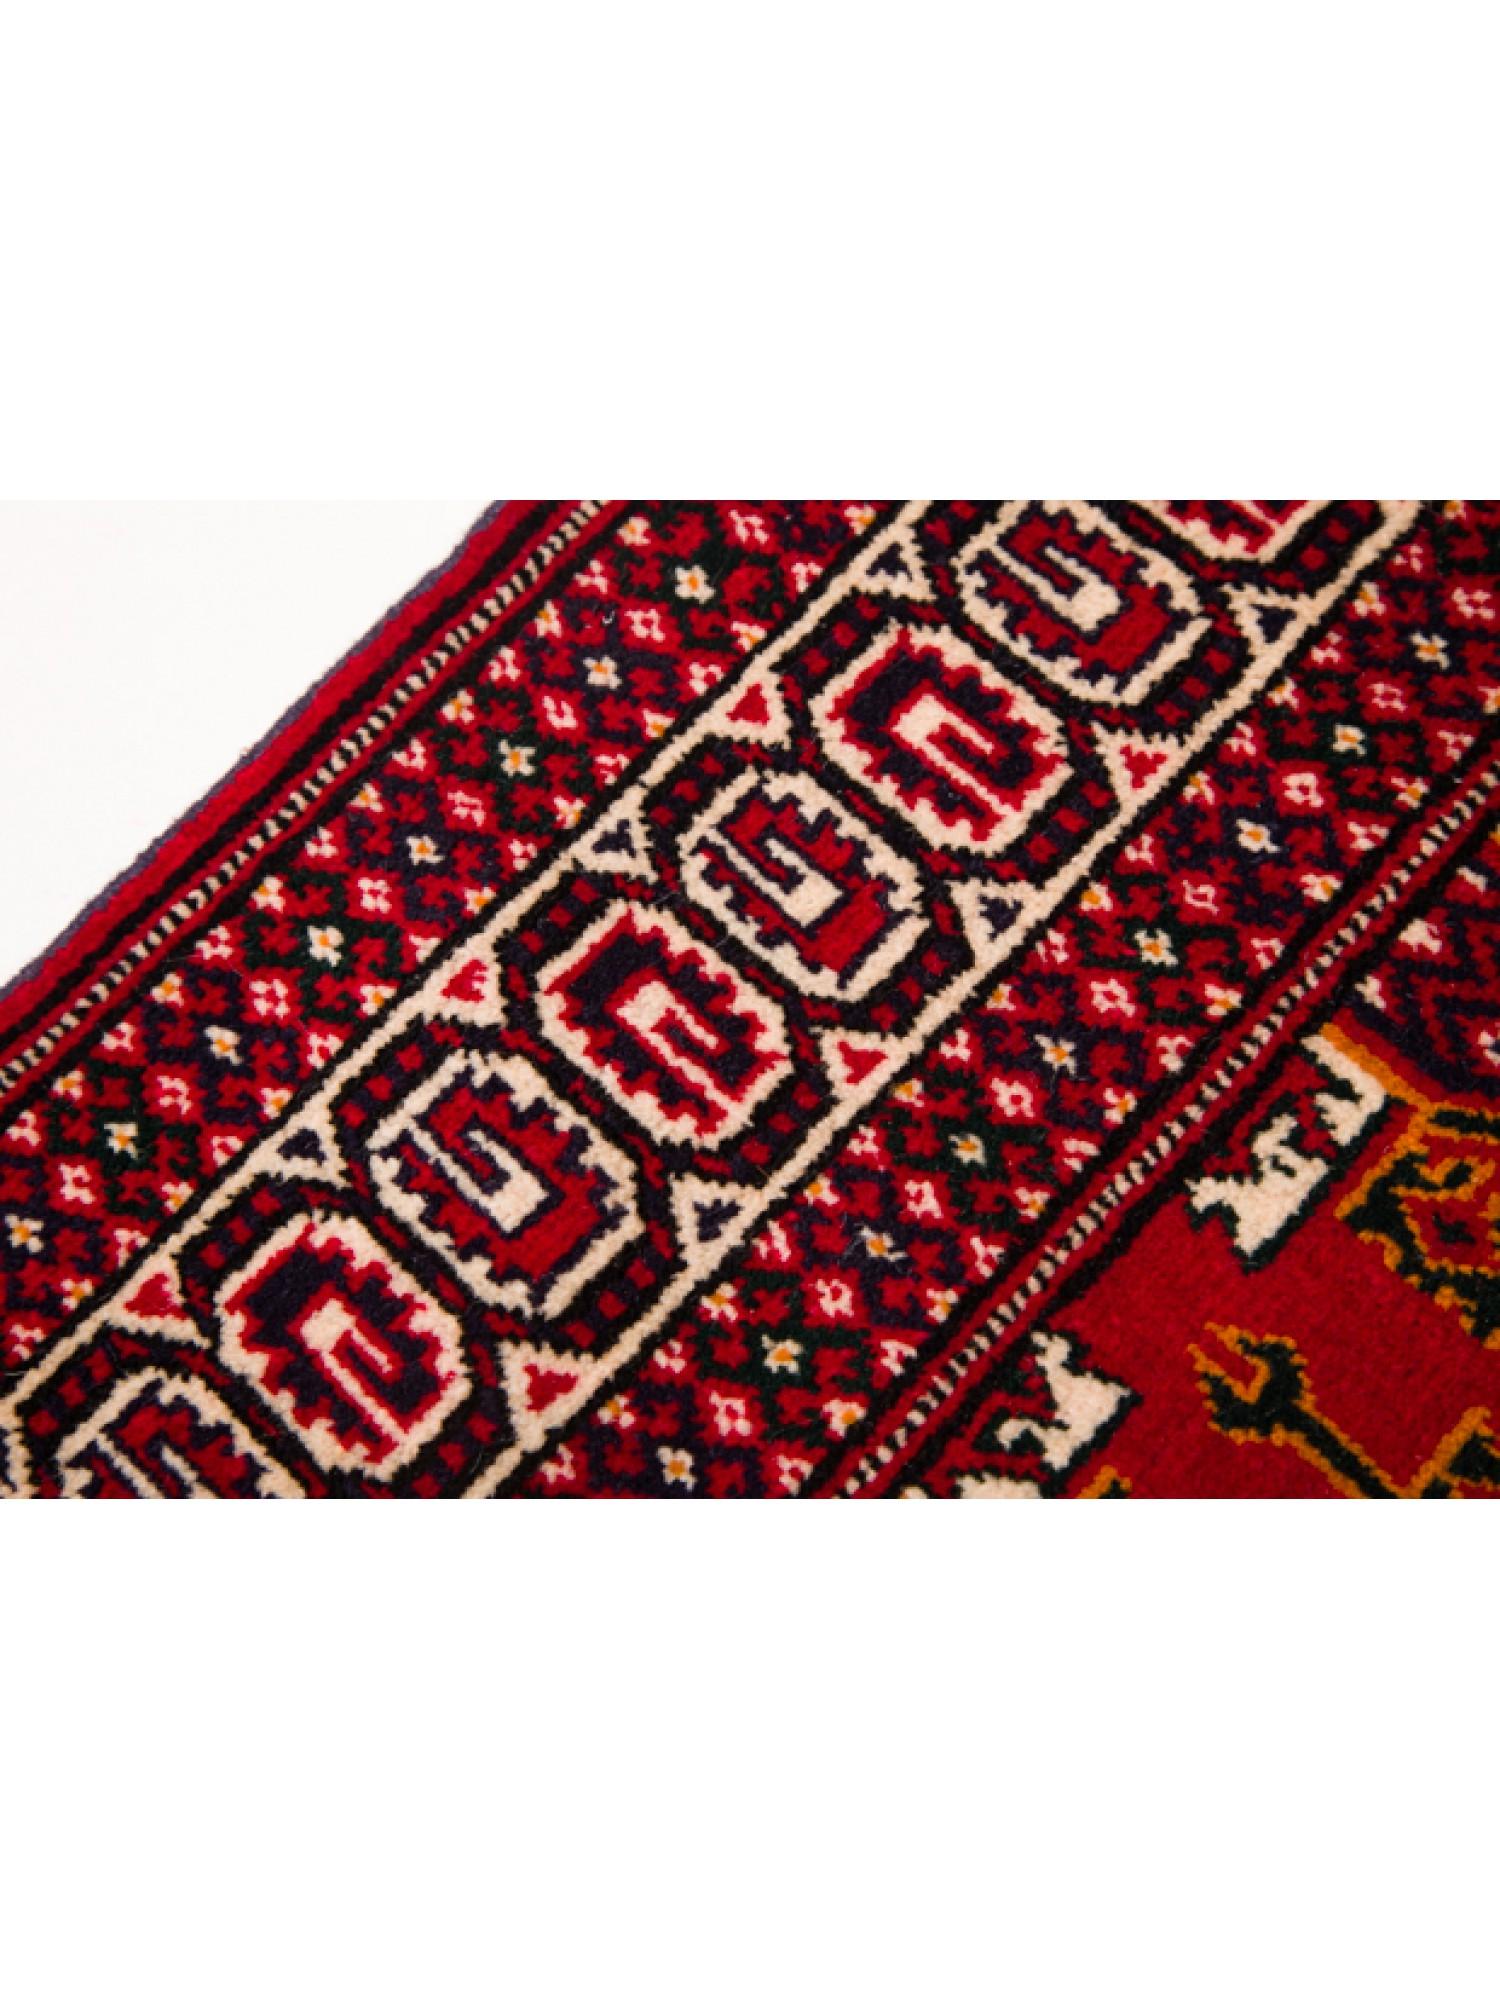 Oushak Vintage Tekke Bukhara Turkmen Carpet Turkoman Runner Rug For Sale